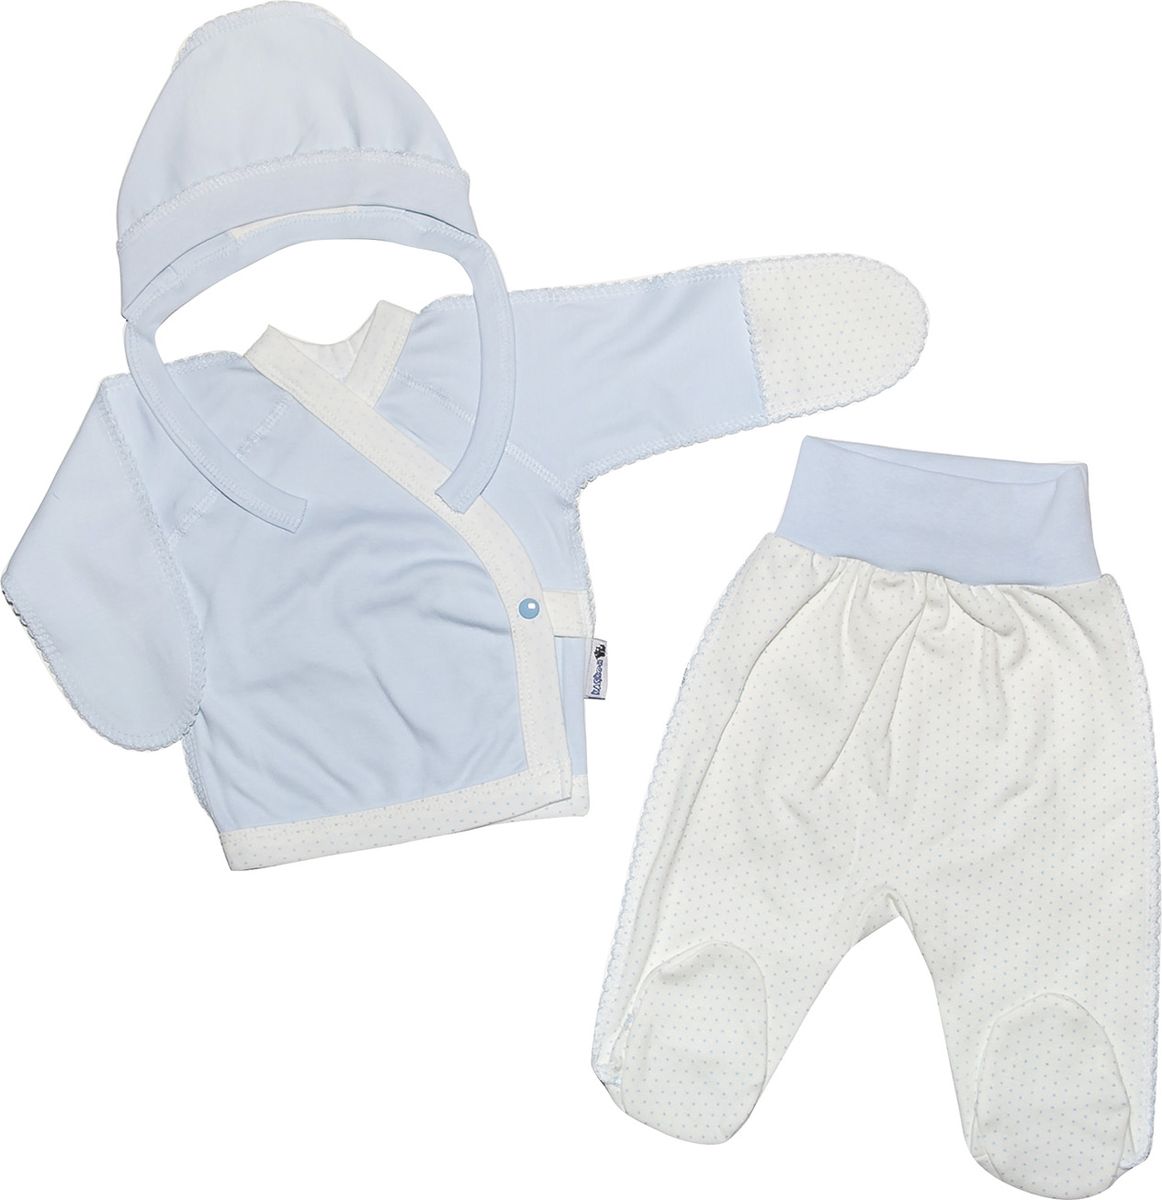 Комплект одежды детский Клякса, цвет: экрю, голубой, 3 предмета. 33с-5182. Размер 56